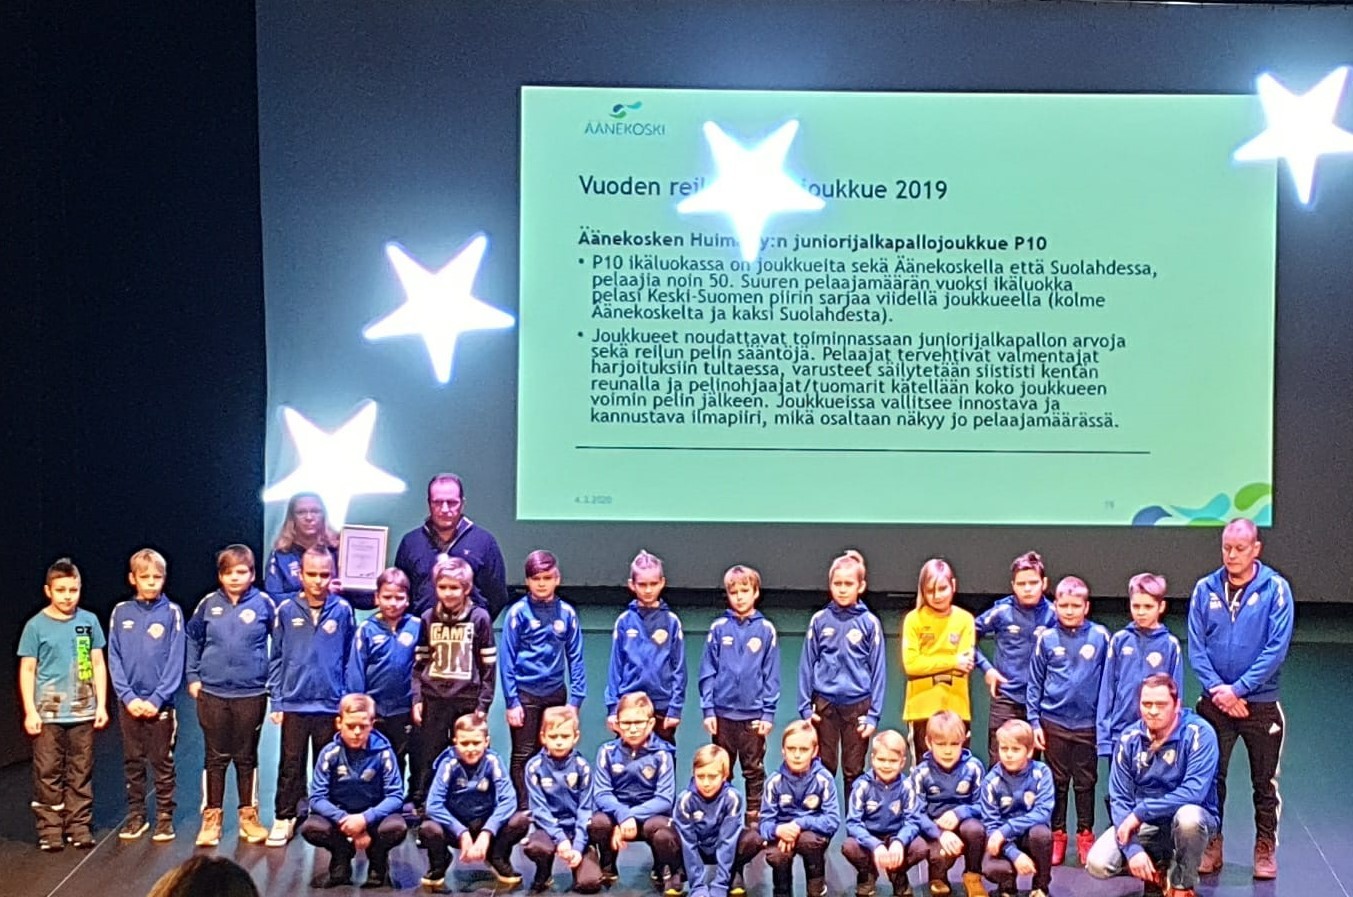 Juniorijalkapallon P10 joukkueille Reilun pelin joukkue tunnustus palkintogaalassa